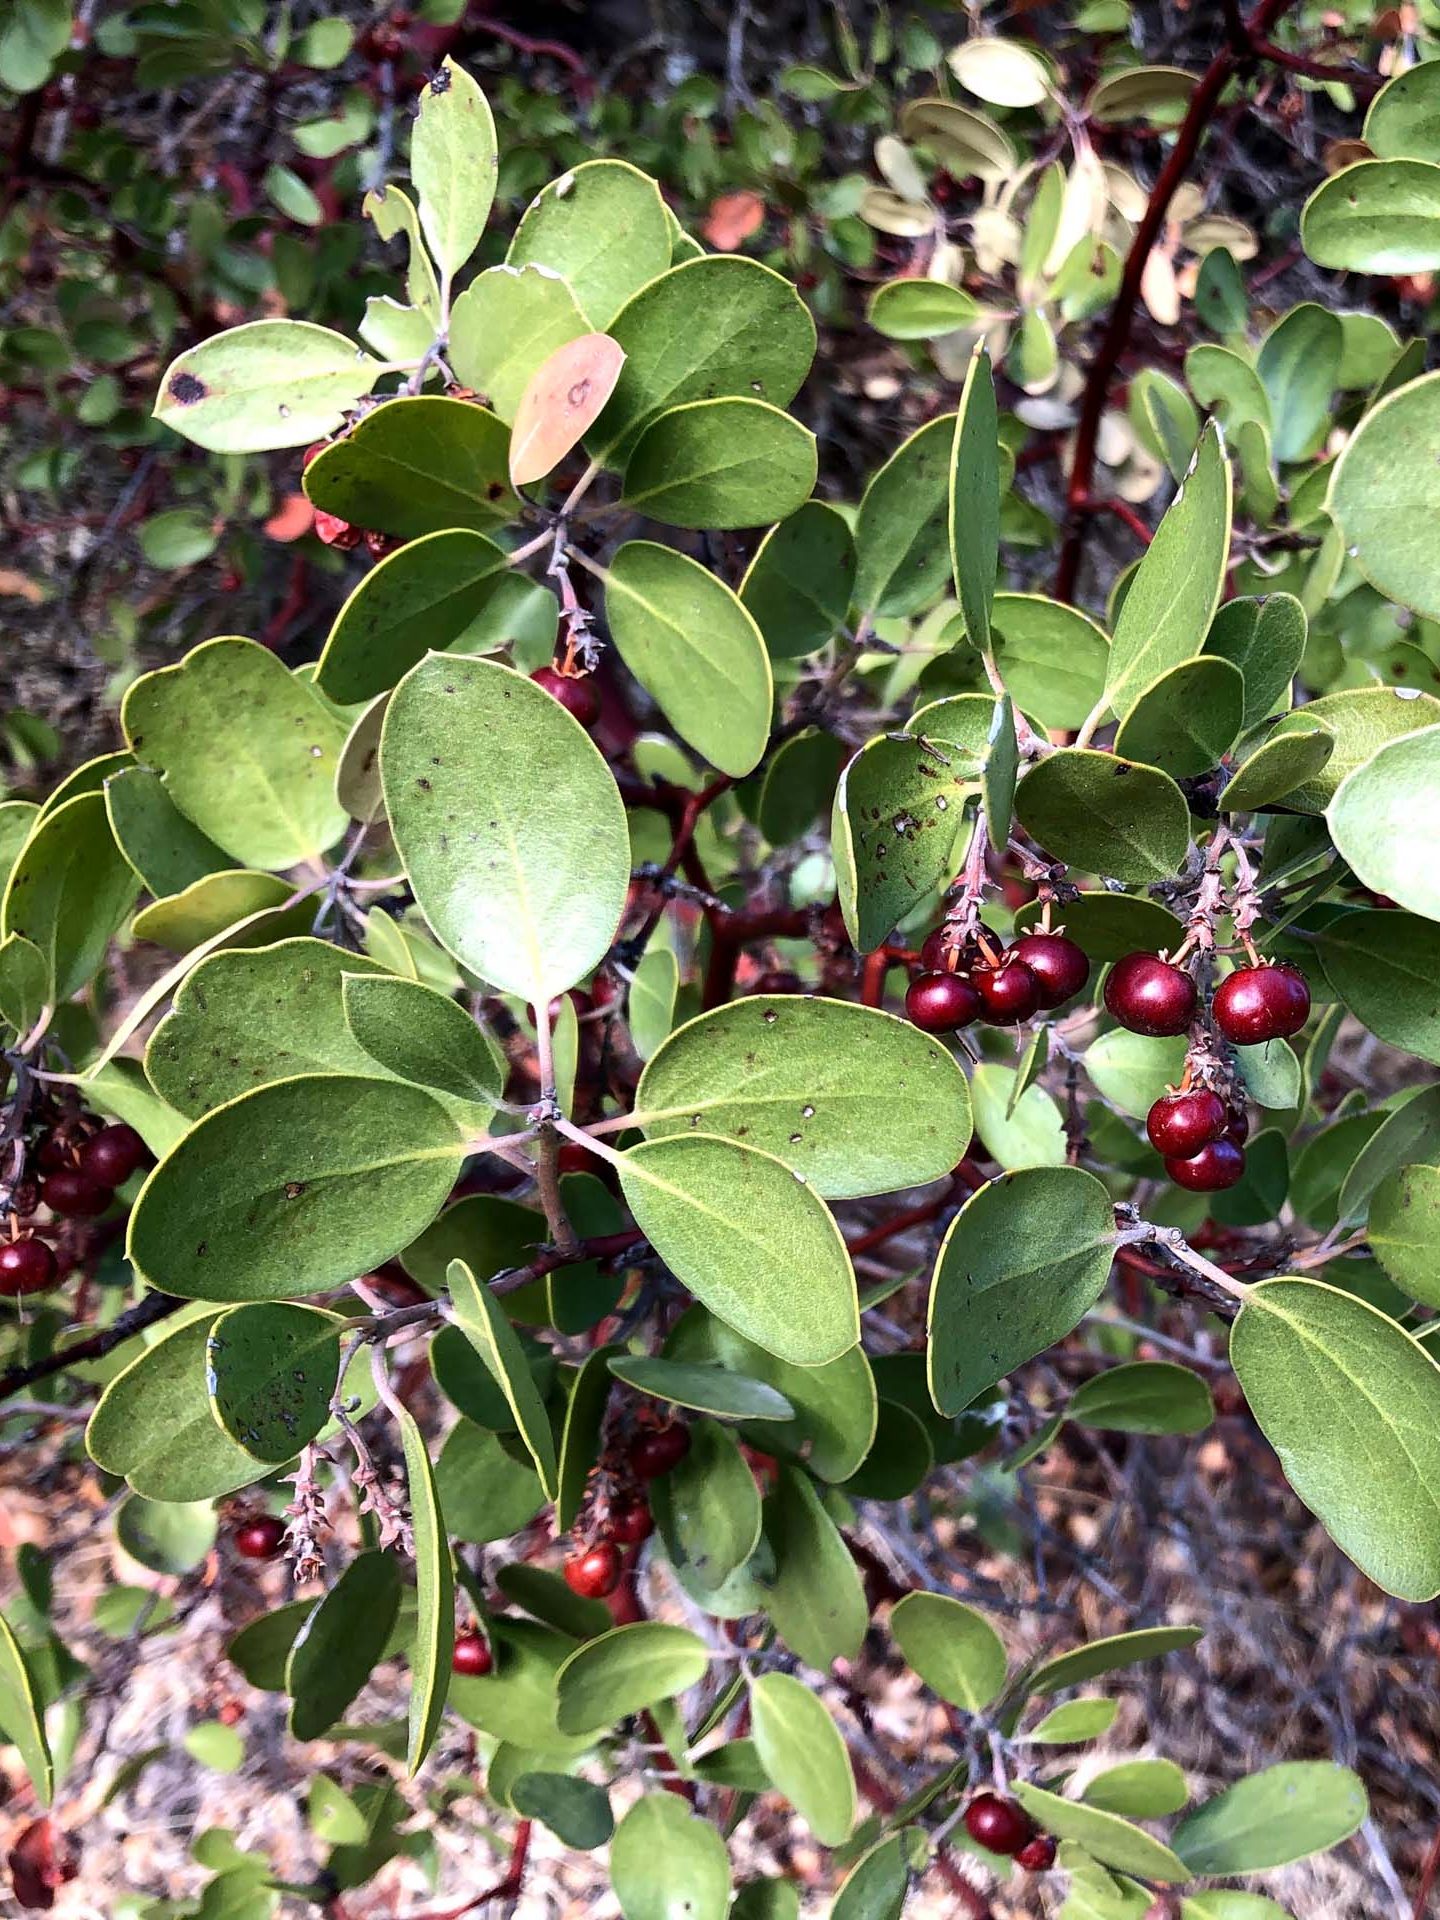 Manzanita berries. C. Harvey.